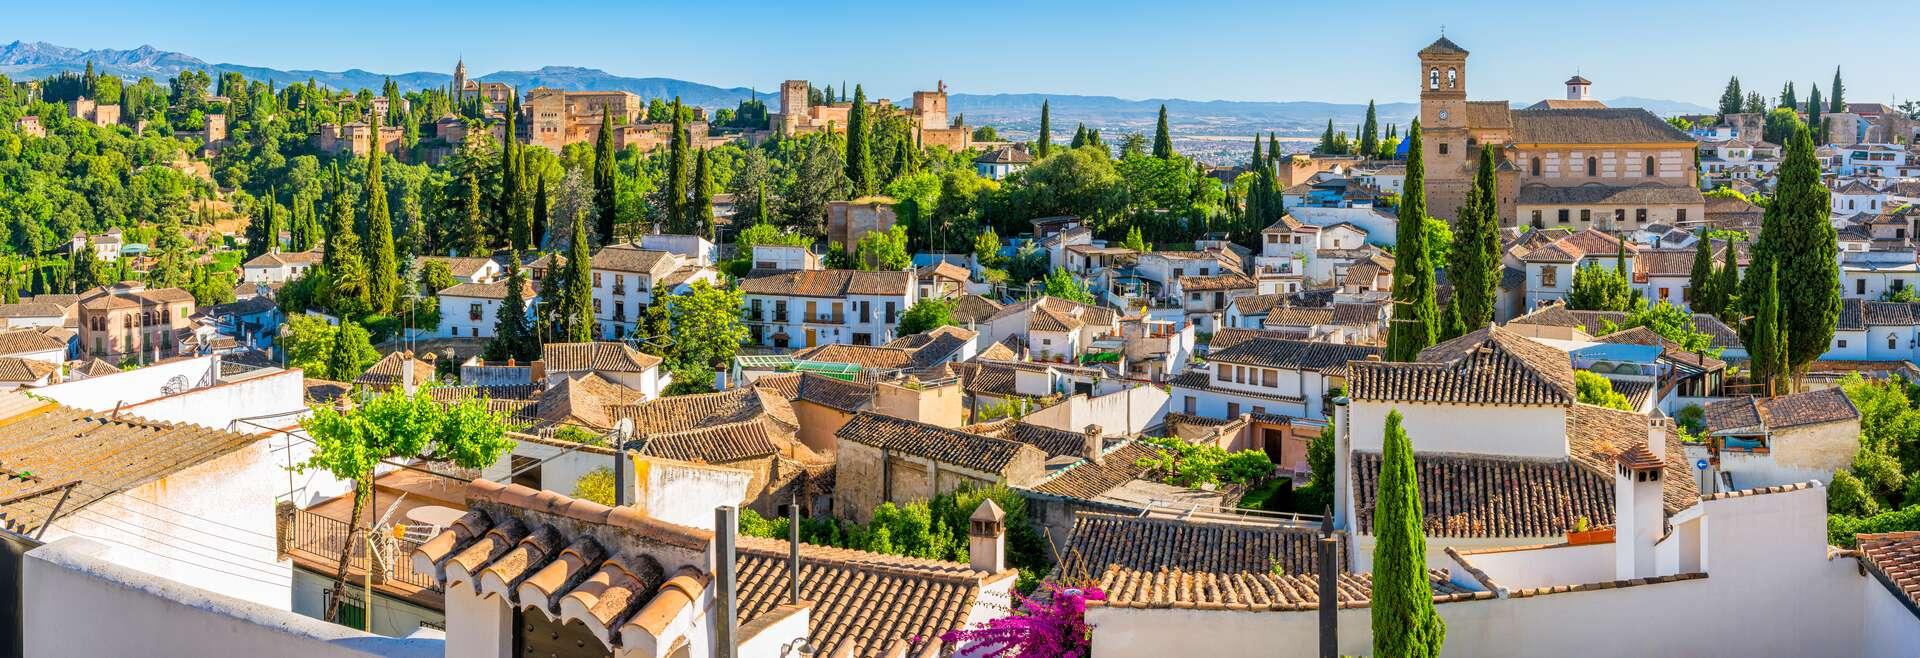 Sprachaufenthalt Spanien, Granada - Stadt